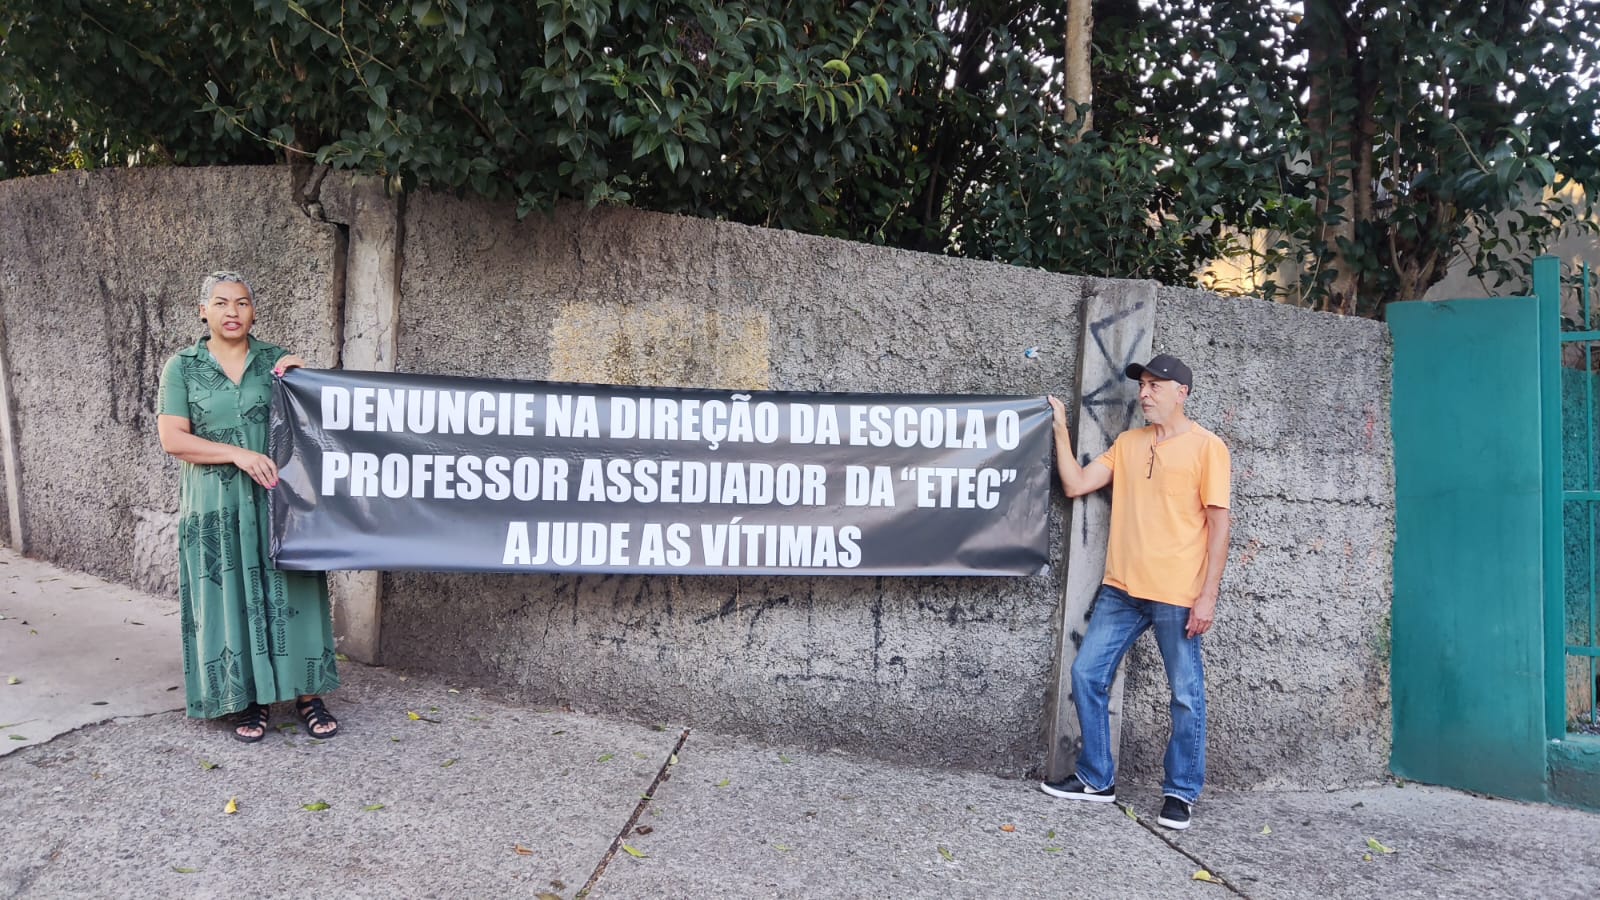 MÃE PROTESTA EM FRENTE À ETEC LAURO GOMES APÓS ESTUDANTE SOFRER ASSÉDIO